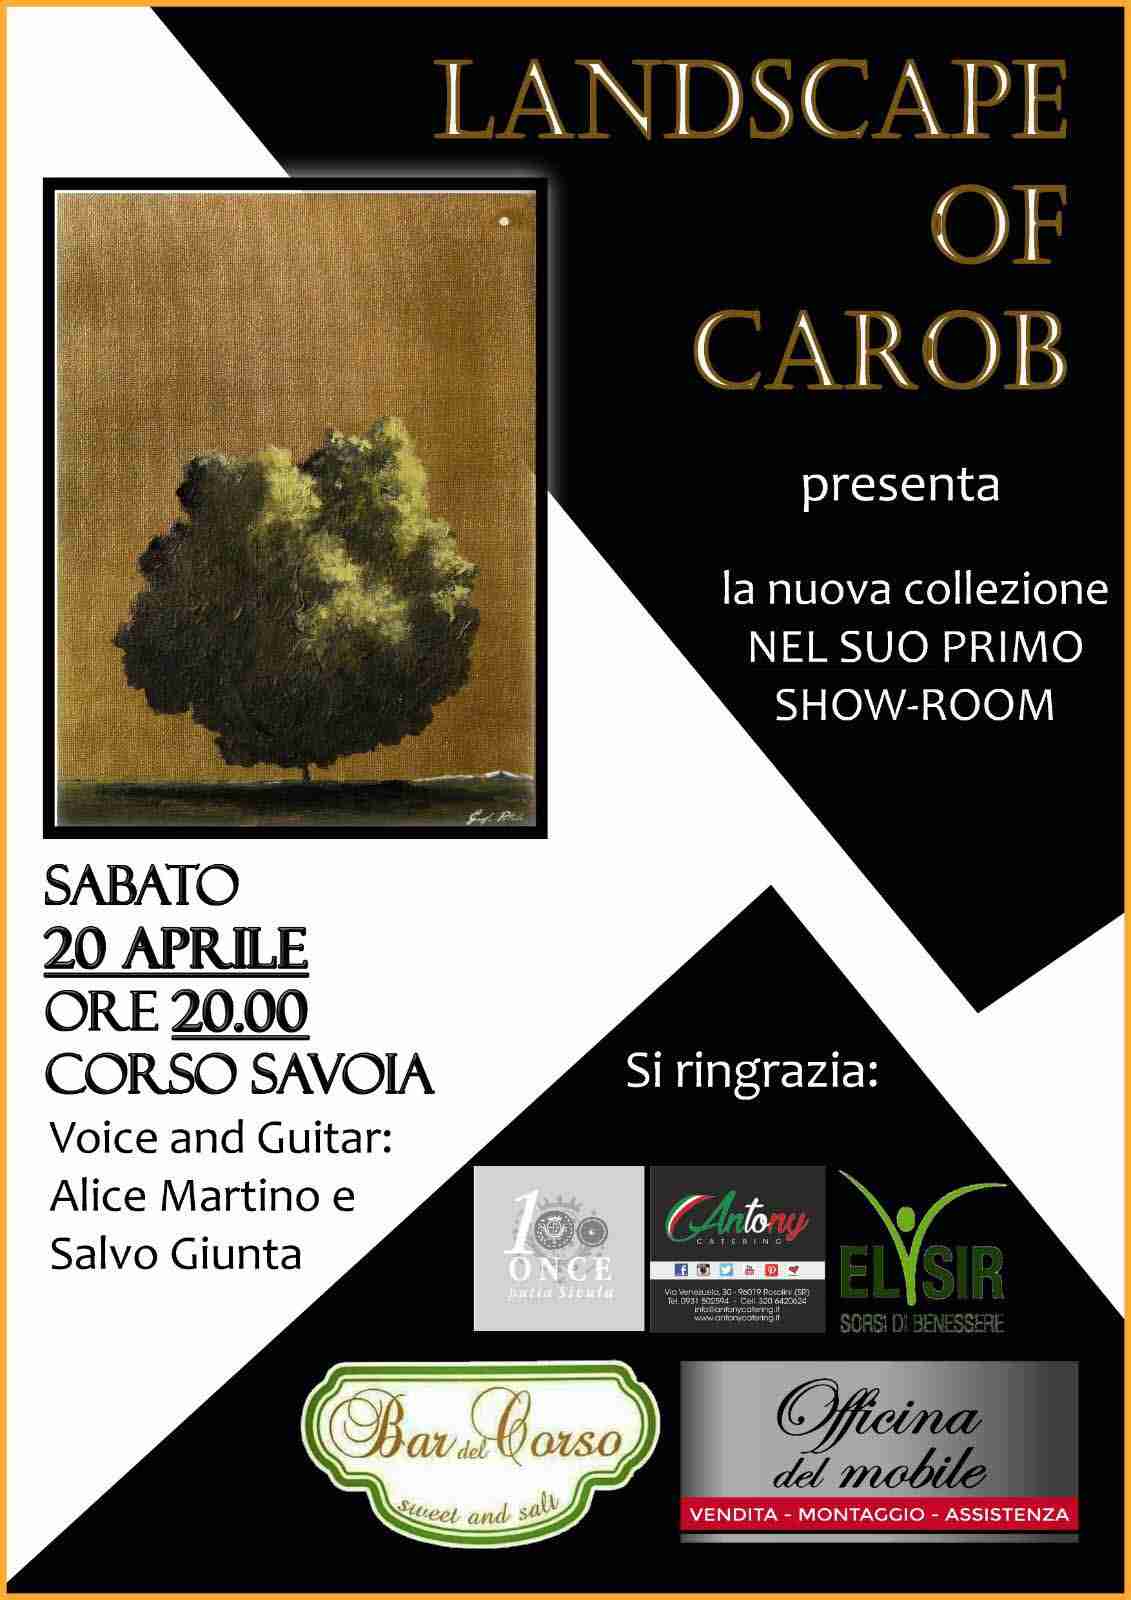 “Landscapes of Carob”. Sabato 20 aprile l’artista Pitrolo presenta la sua nuova collezione